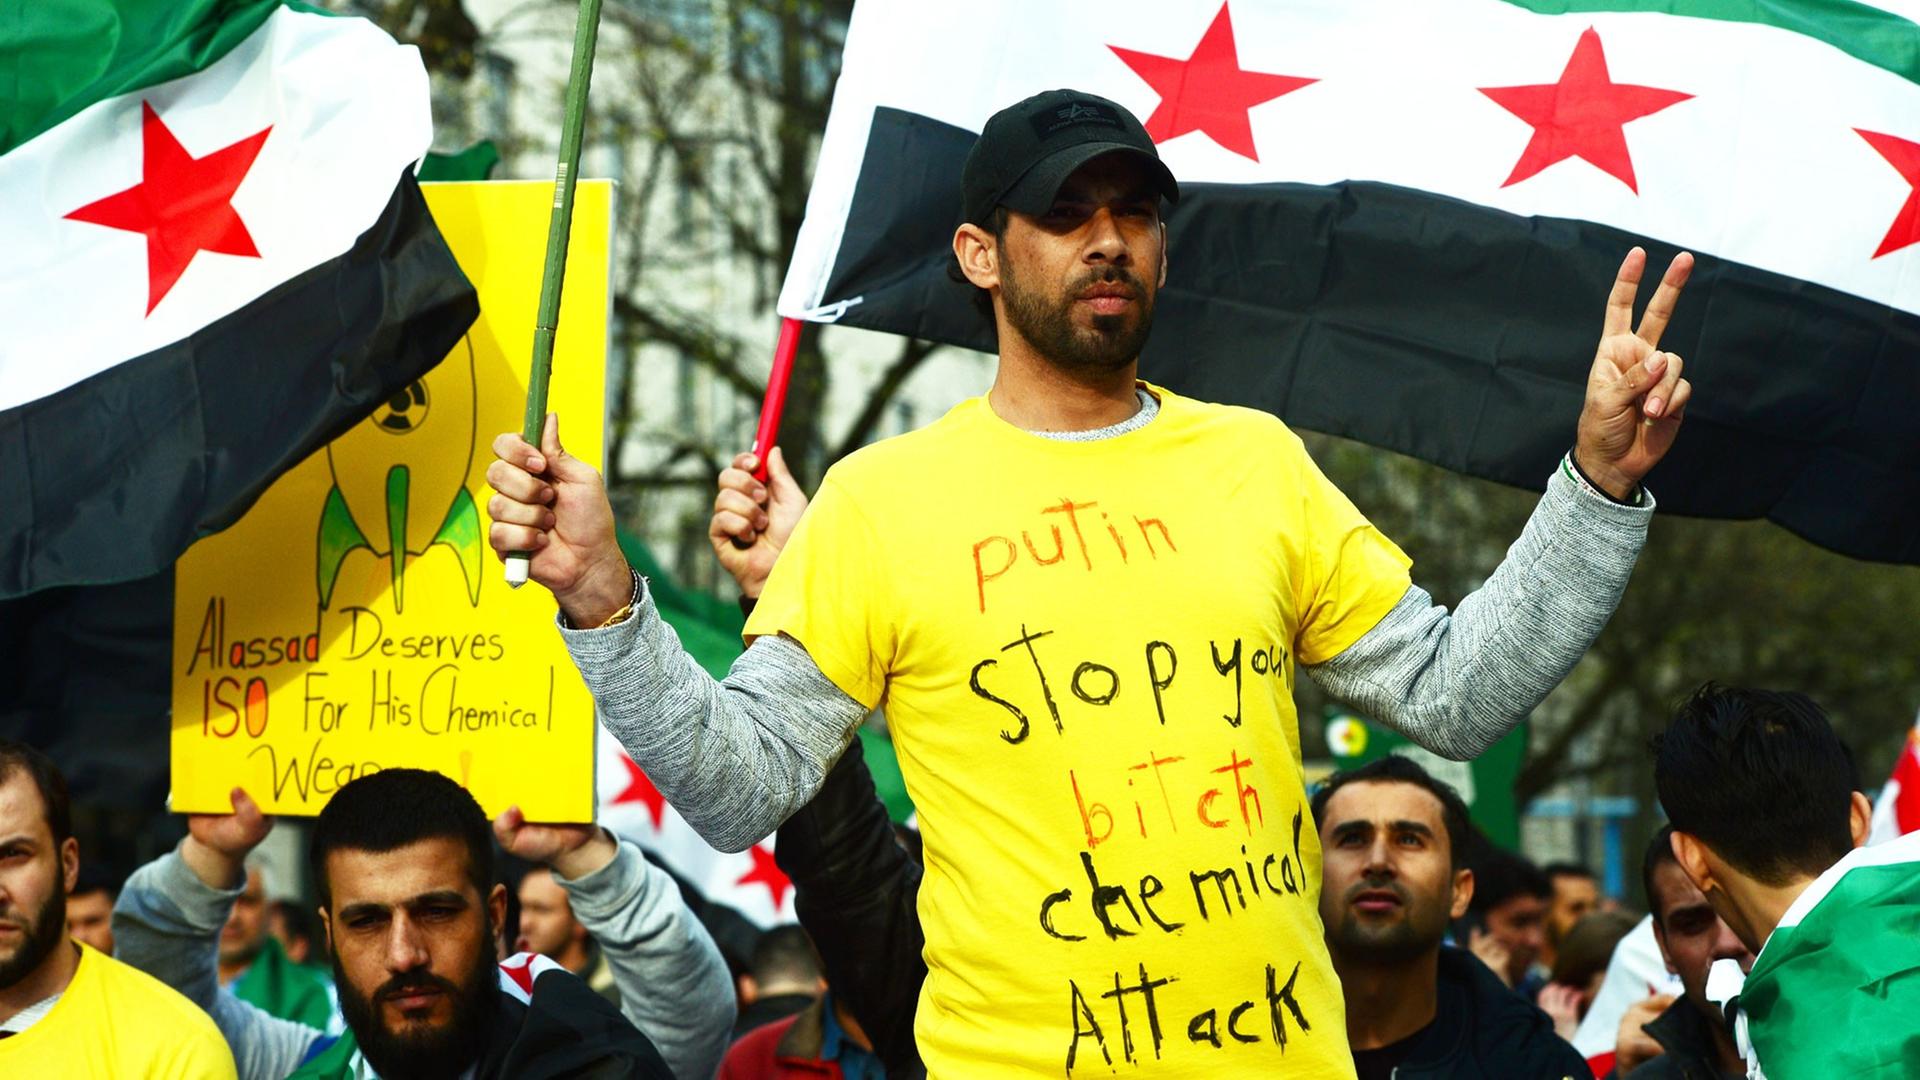 Mitglieder der deutsch-syrischen Solidaritätsorganisation "Adopt a Revolution" und andere Demonstranten protestieren am 05.04.2017 vor der russischen Botschaft in Berlin gegen den Einsatz von Chemiewaffen in Syrien.